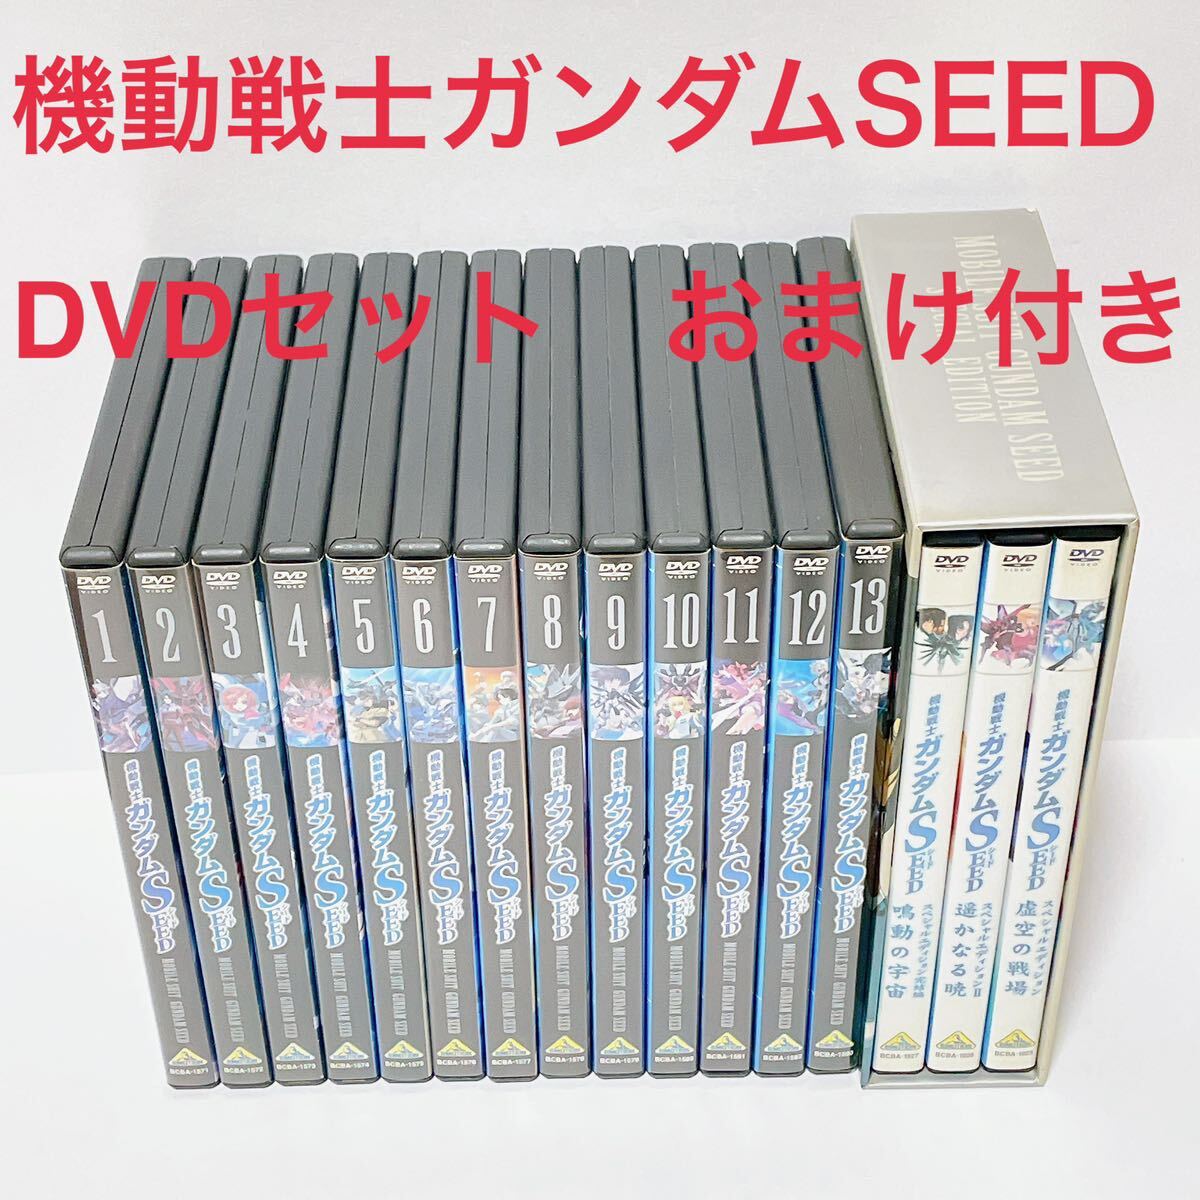 機動戦士ガンダムSEED DVDセット